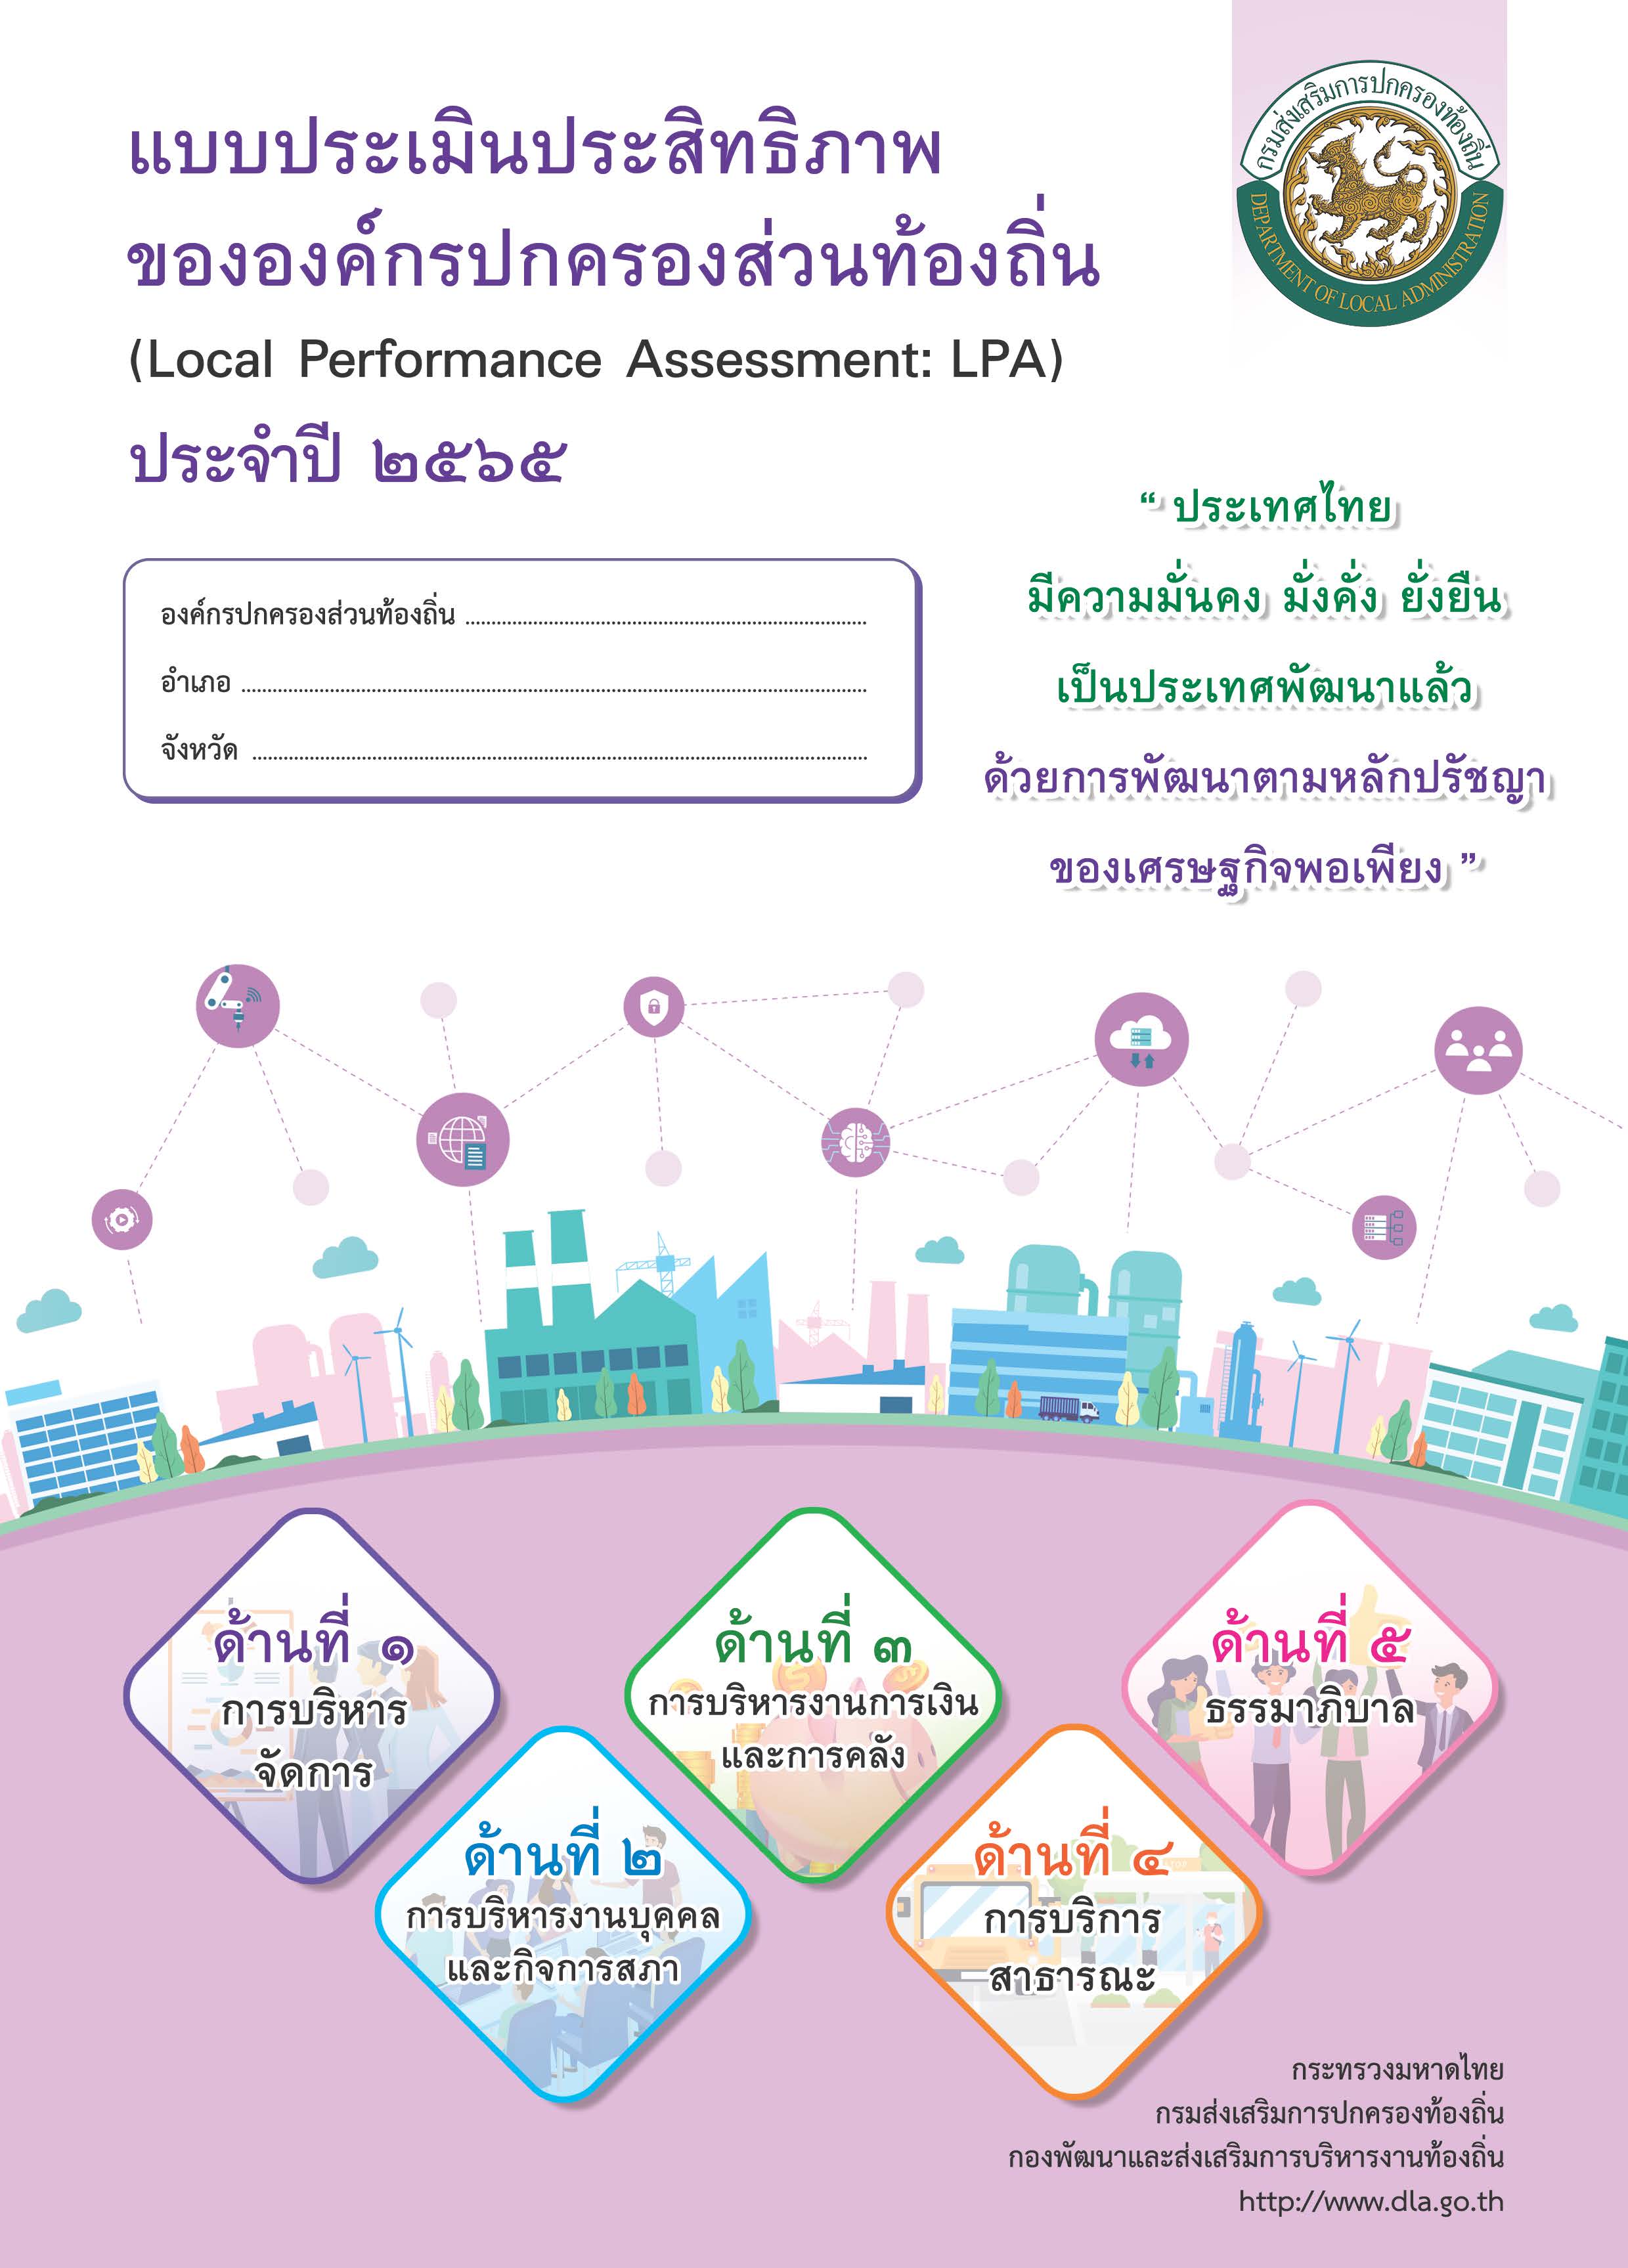 แบบประเมินประสิทธิภาพขององค์กรปกครองส่วนท้องถิ่น (Local Performance Assessment: LPA) ประจำปี 2565